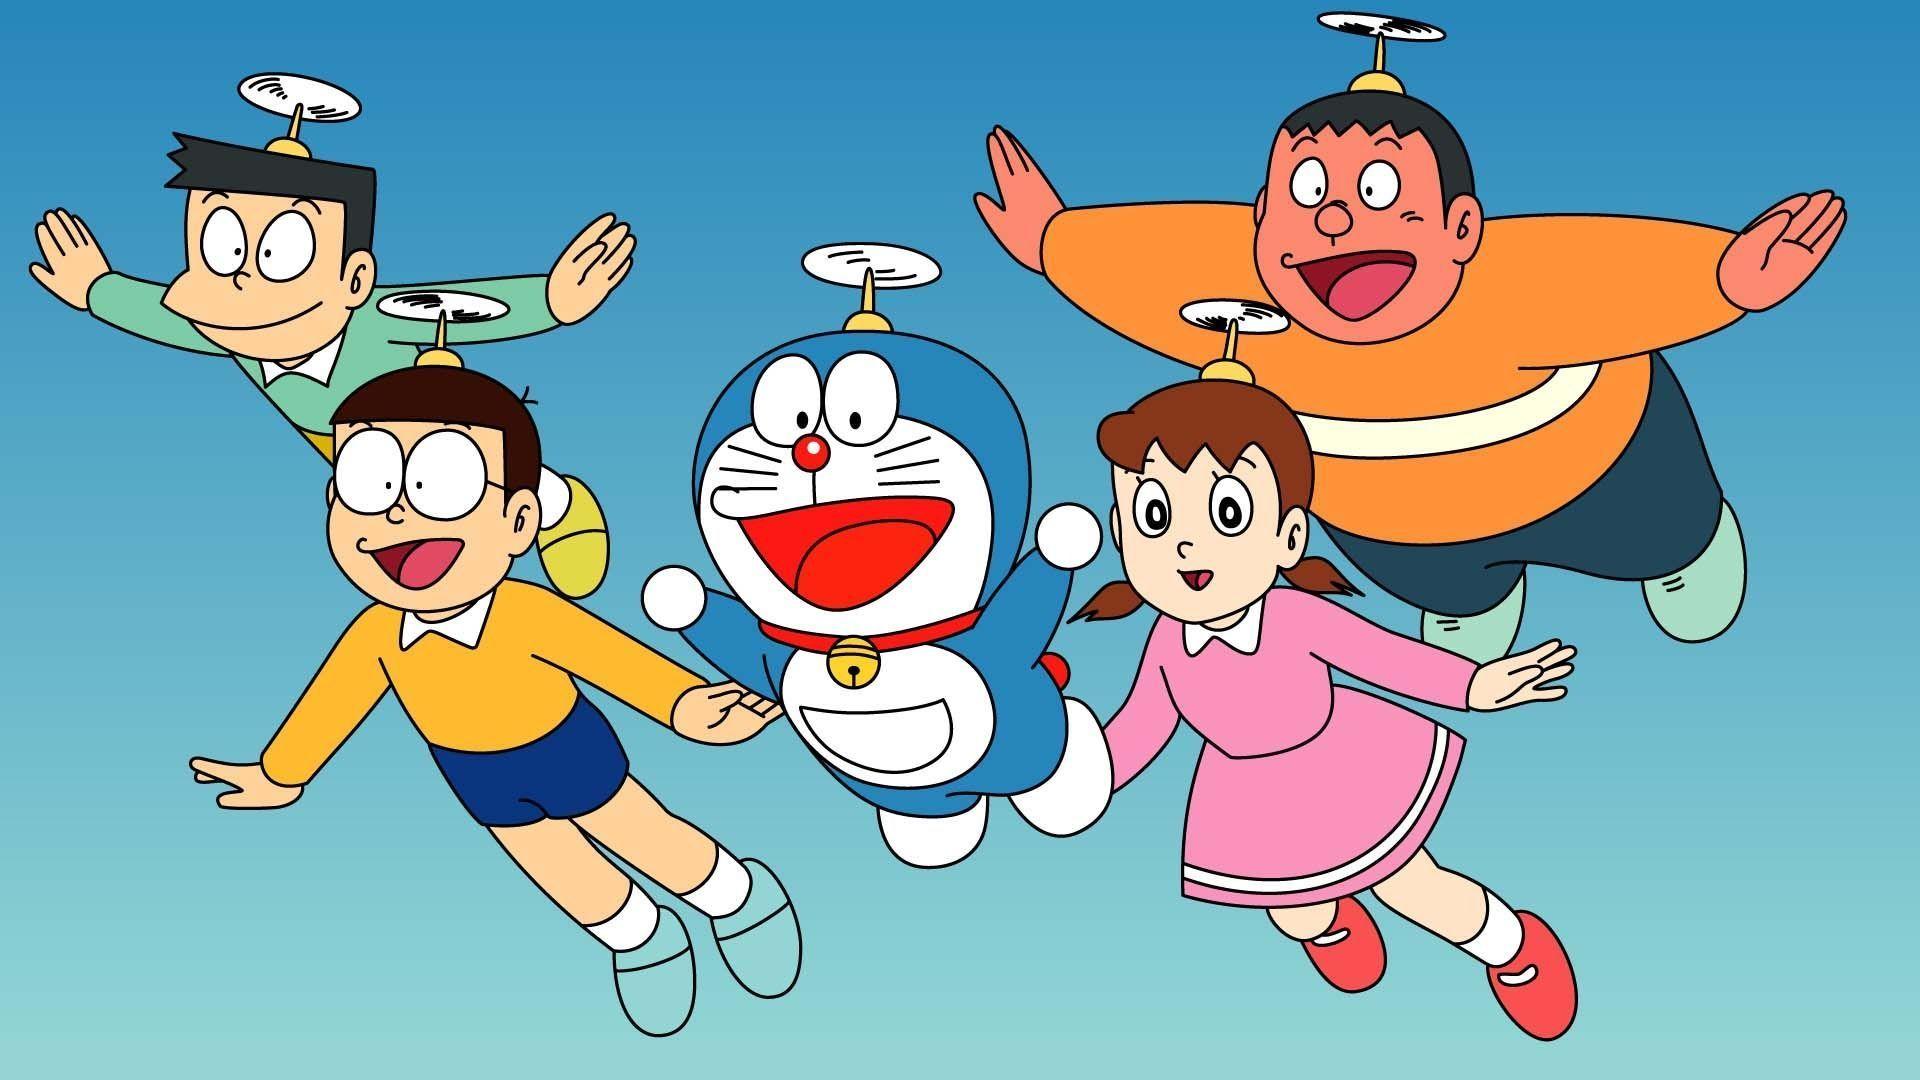 Wallpaper For > Doraemon Wallpaper